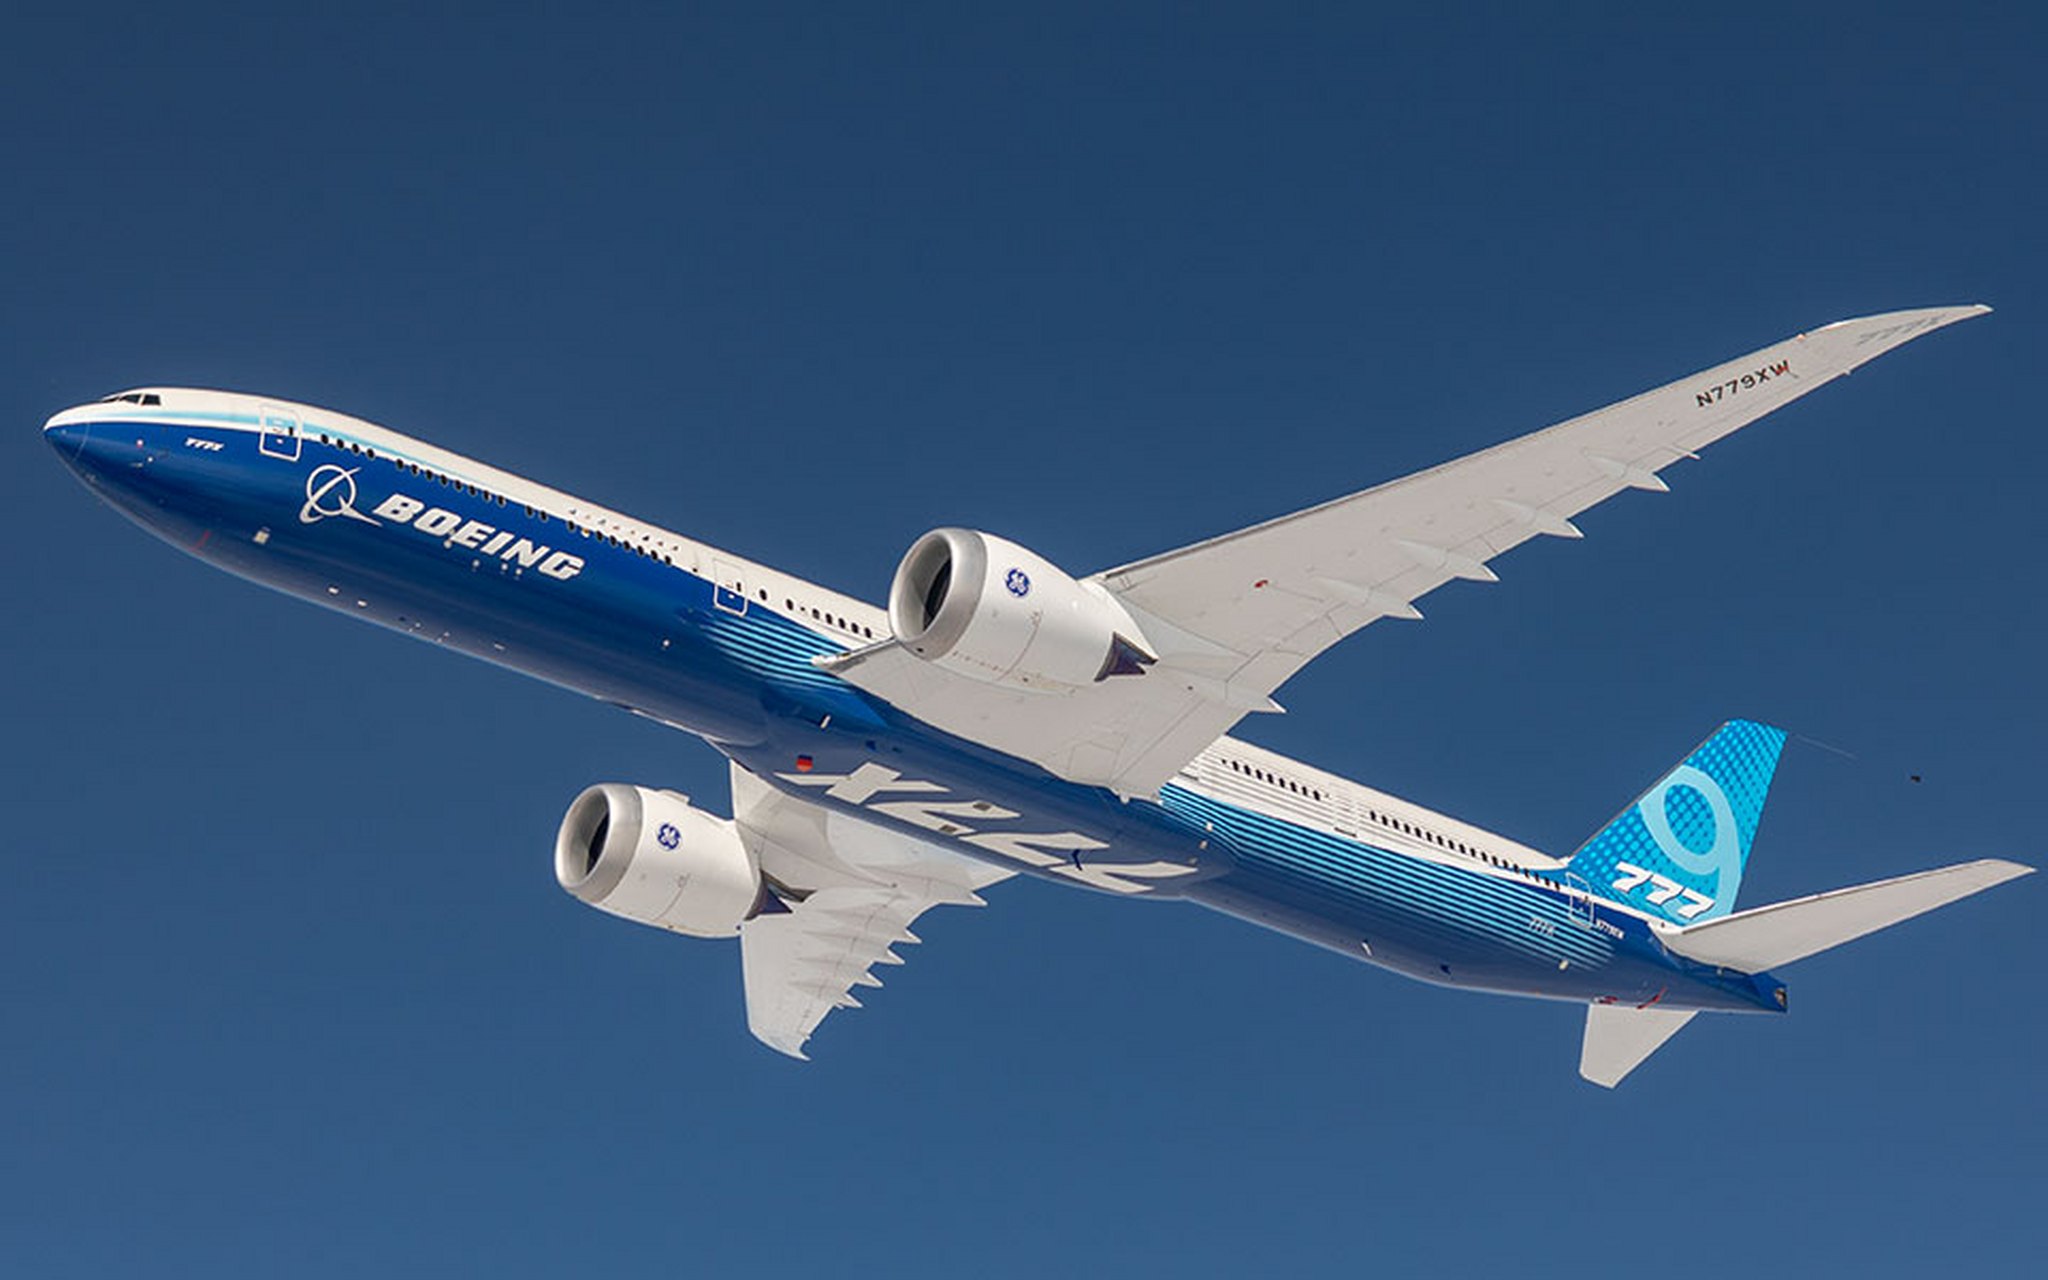 大韩航空正就购买至少10架777x飞机进行谈判,此举对波音是重大利好